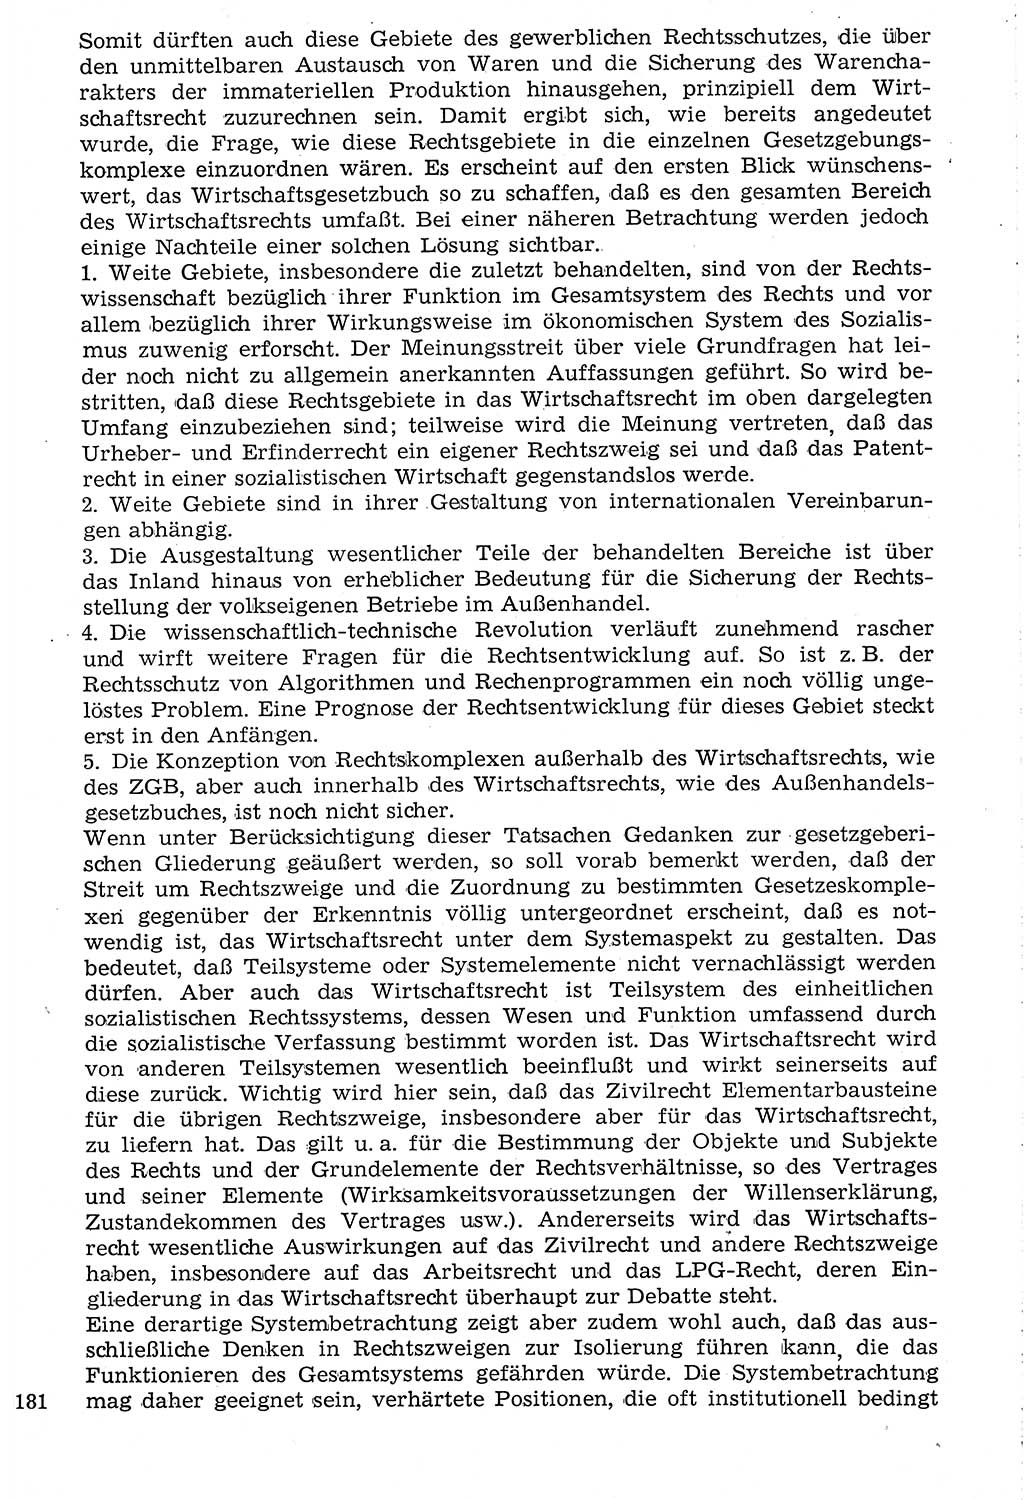 Staat und Recht (StuR), 17. Jahrgang [Deutsche Demokratische Republik (DDR)] 1968, Seite 1181 (StuR DDR 1968, S. 1181)